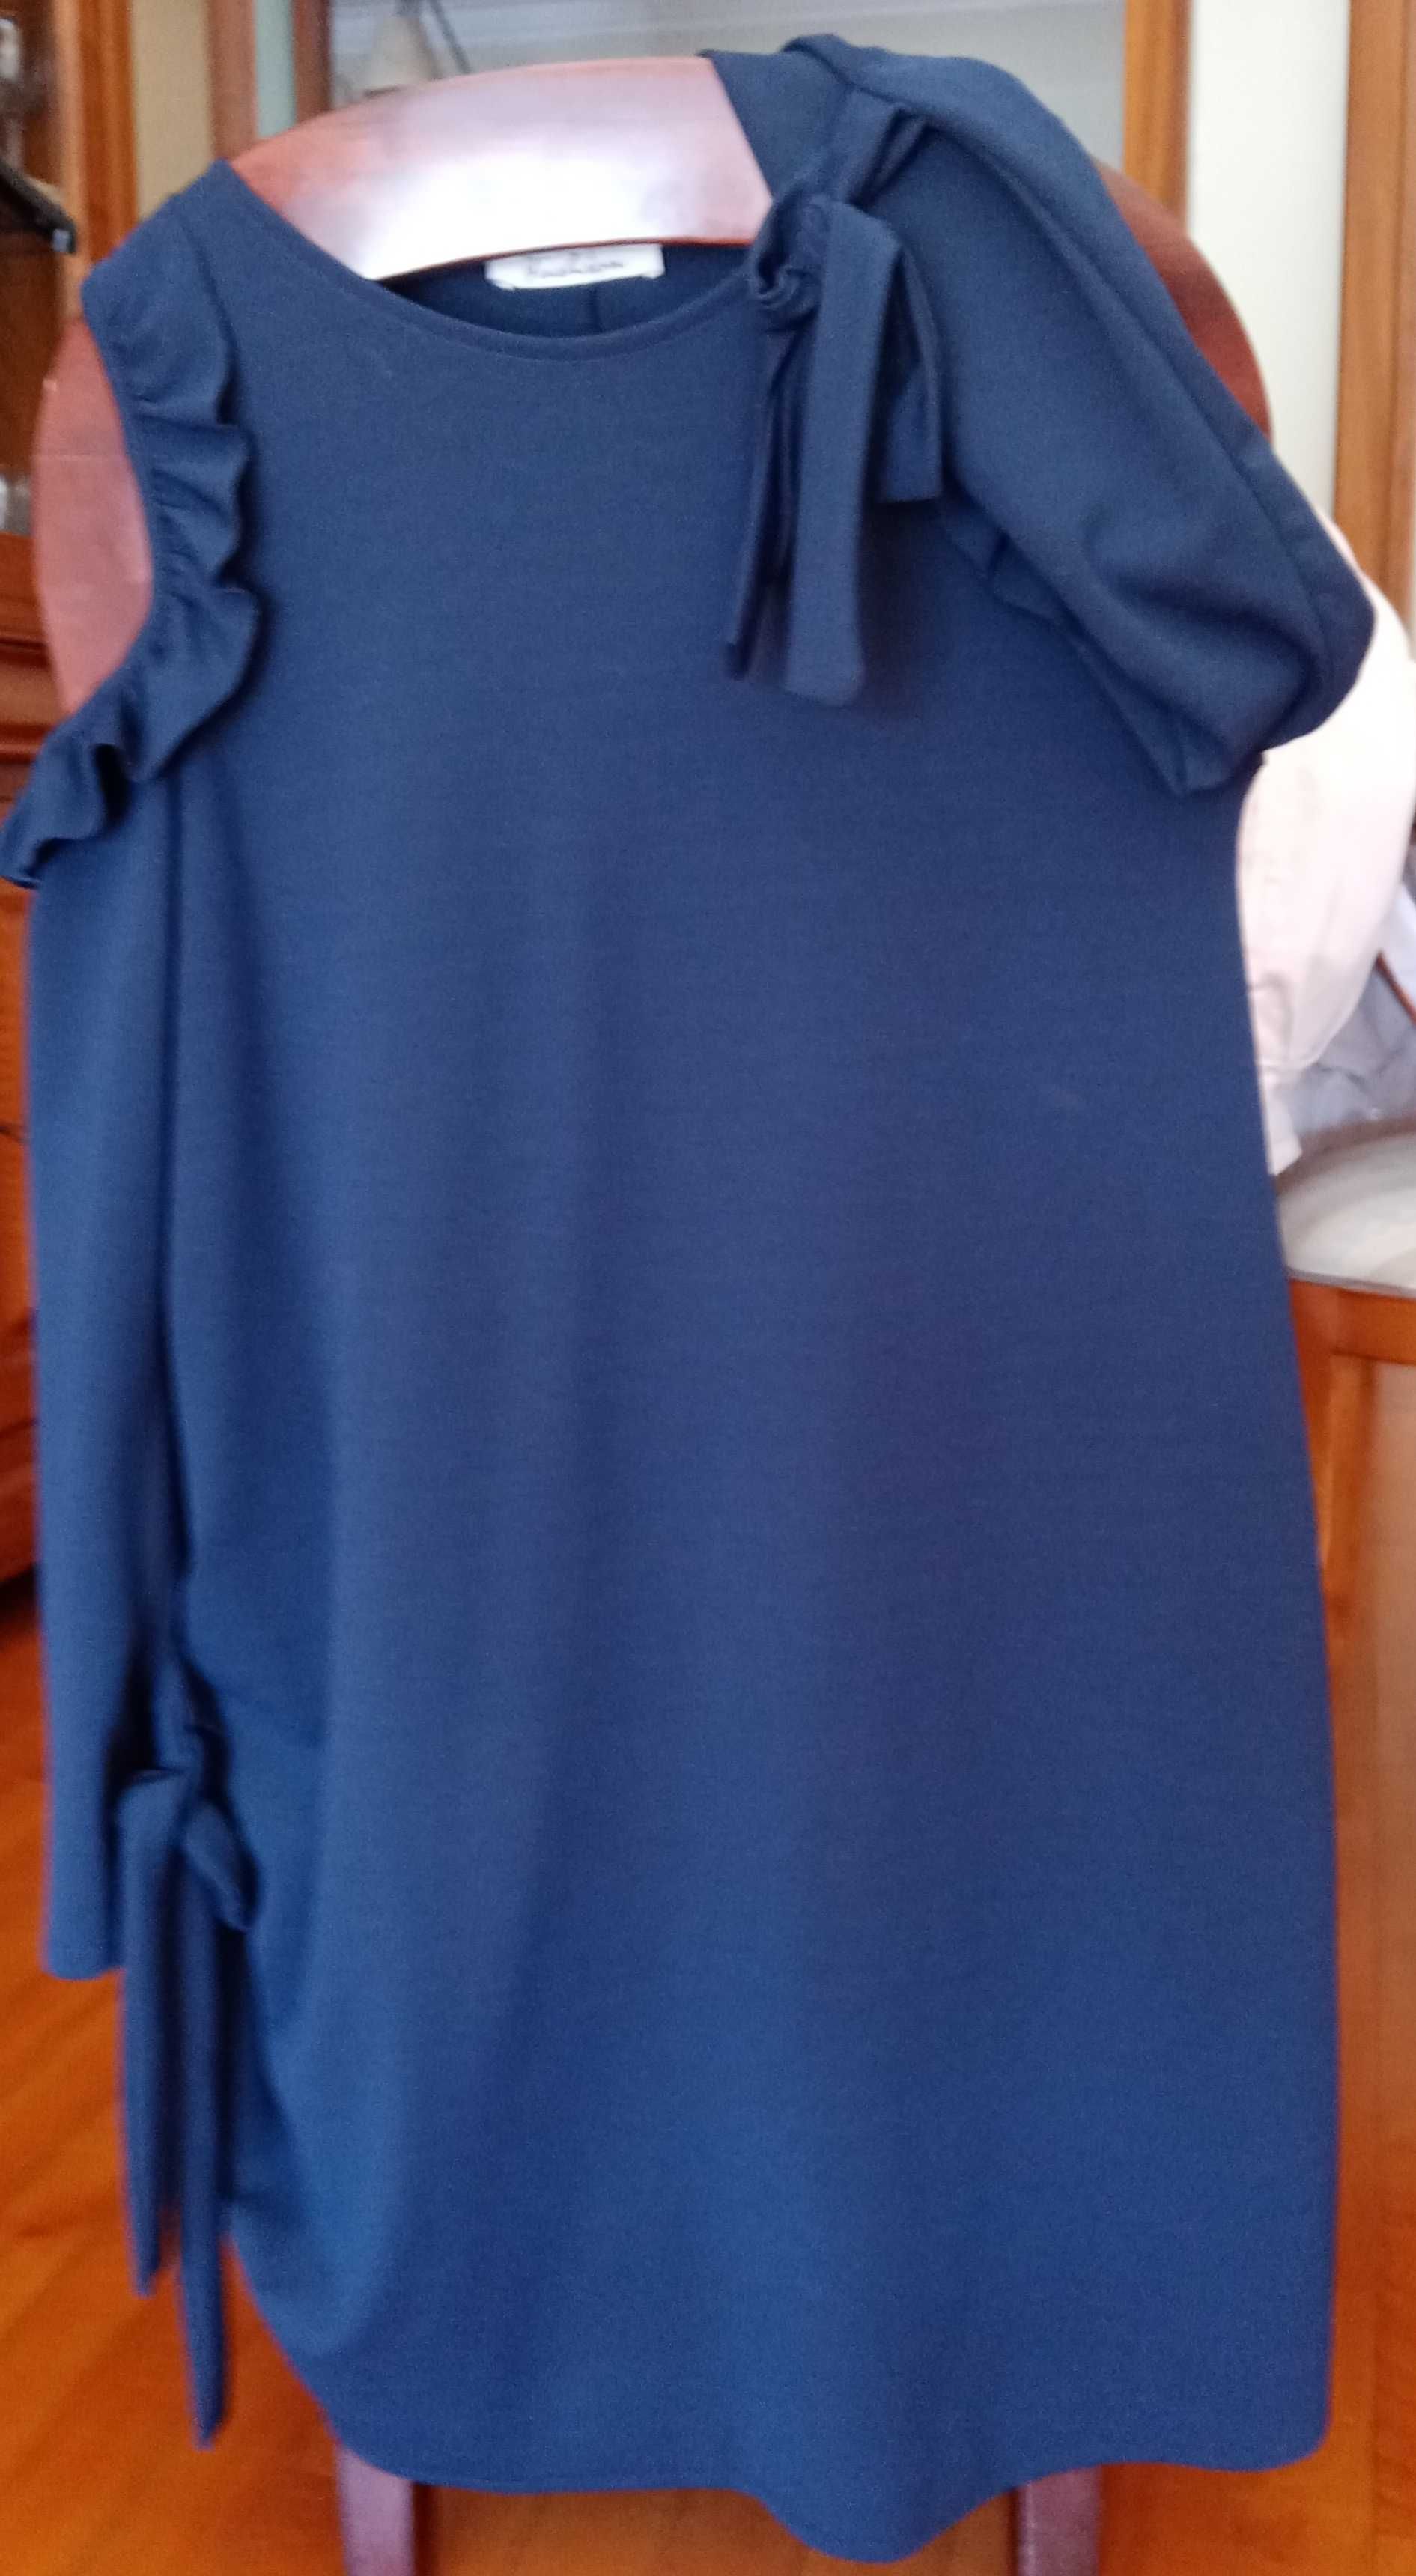 Vestido novo azul marinho